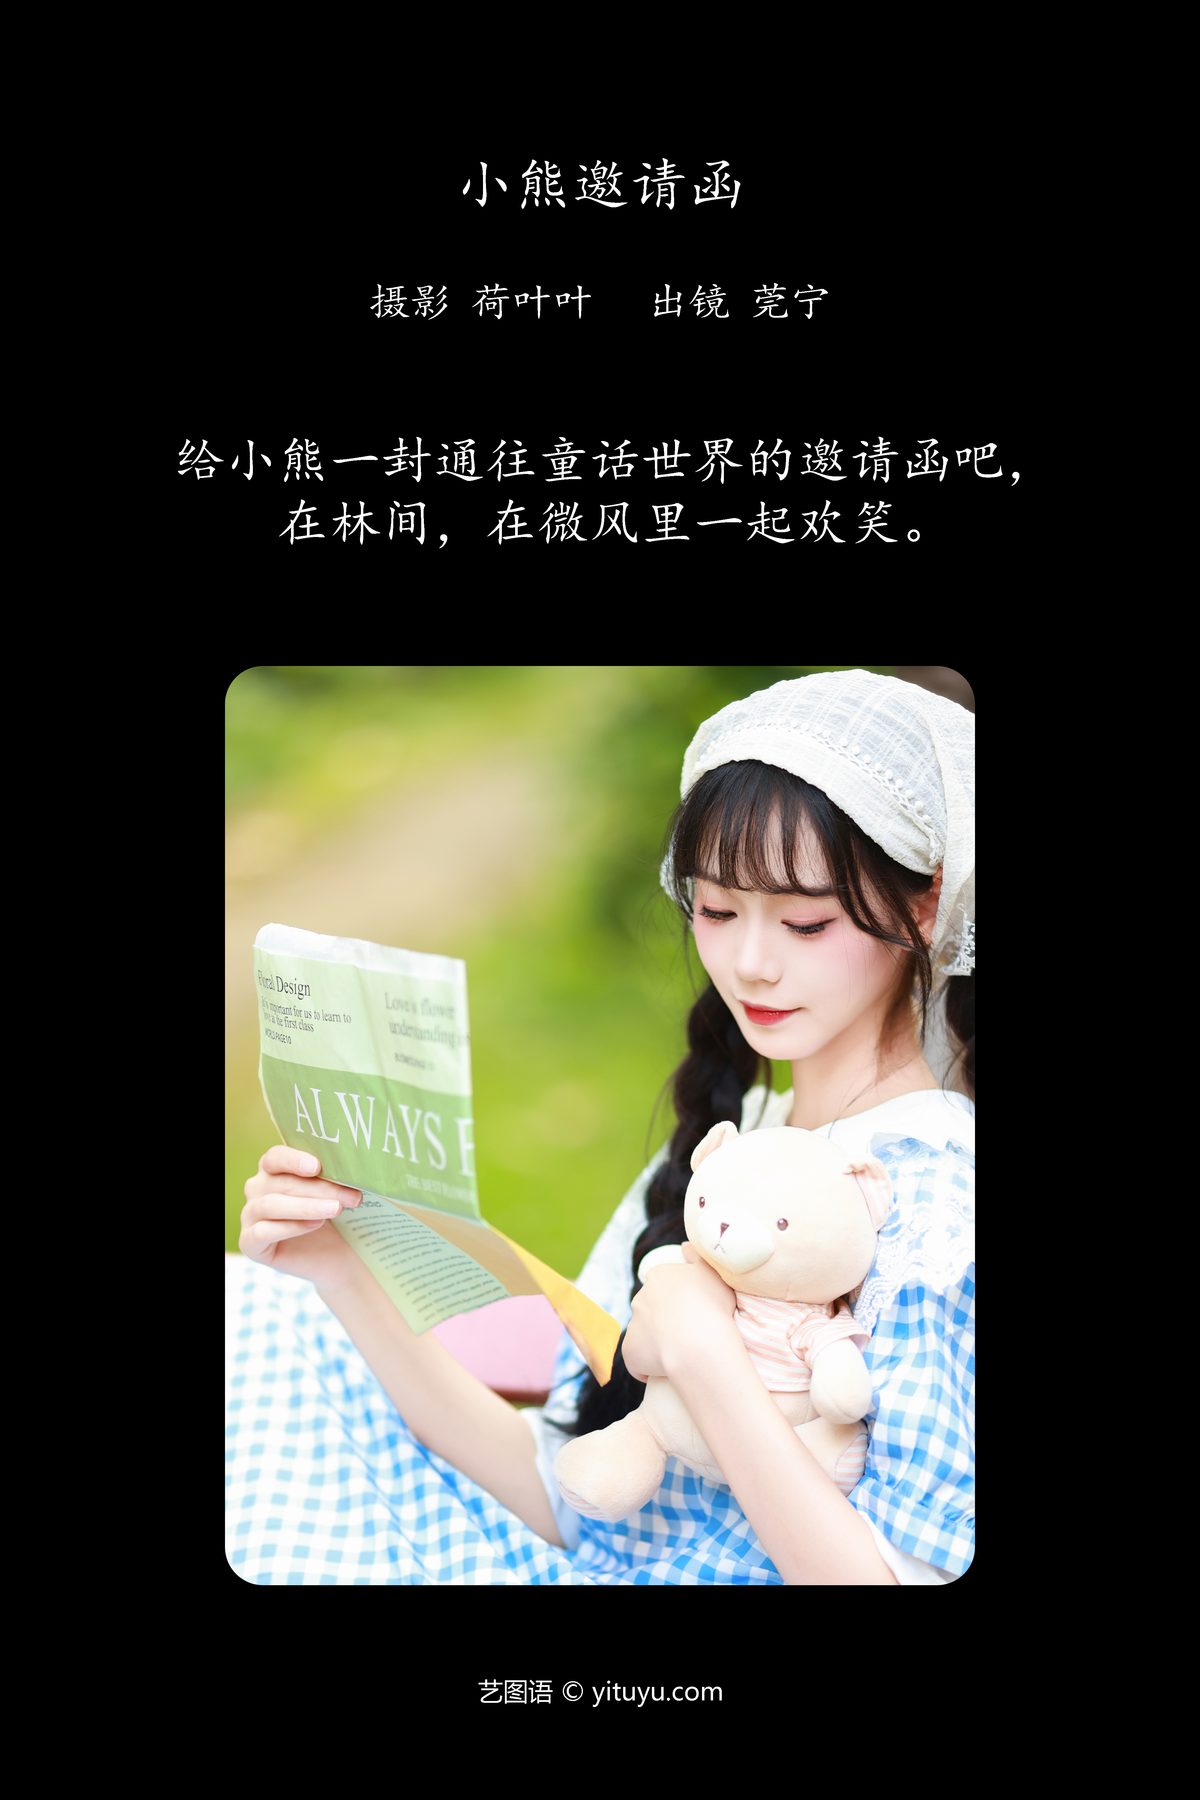 YiTuYu艺图语 Vol 5854 Guan Ning 0002 1665089789.jpg